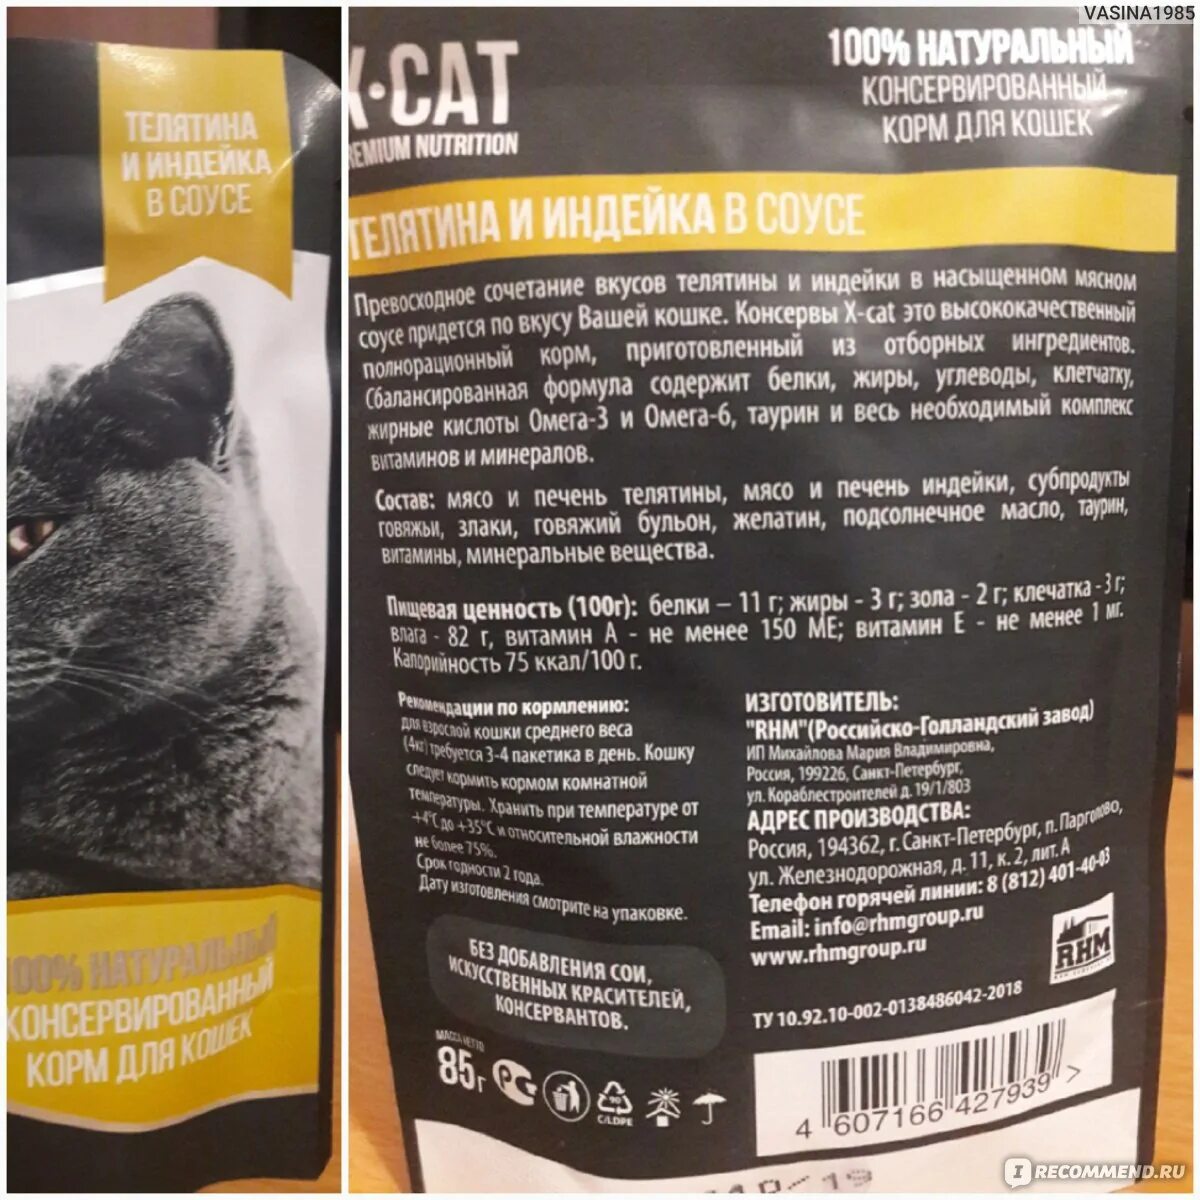 X-Cat корм. Состав корма x-Cat. Корм для кошек белорусского производства. Корм для кошек черная упаковка. Влажный корм для кошек jarvi